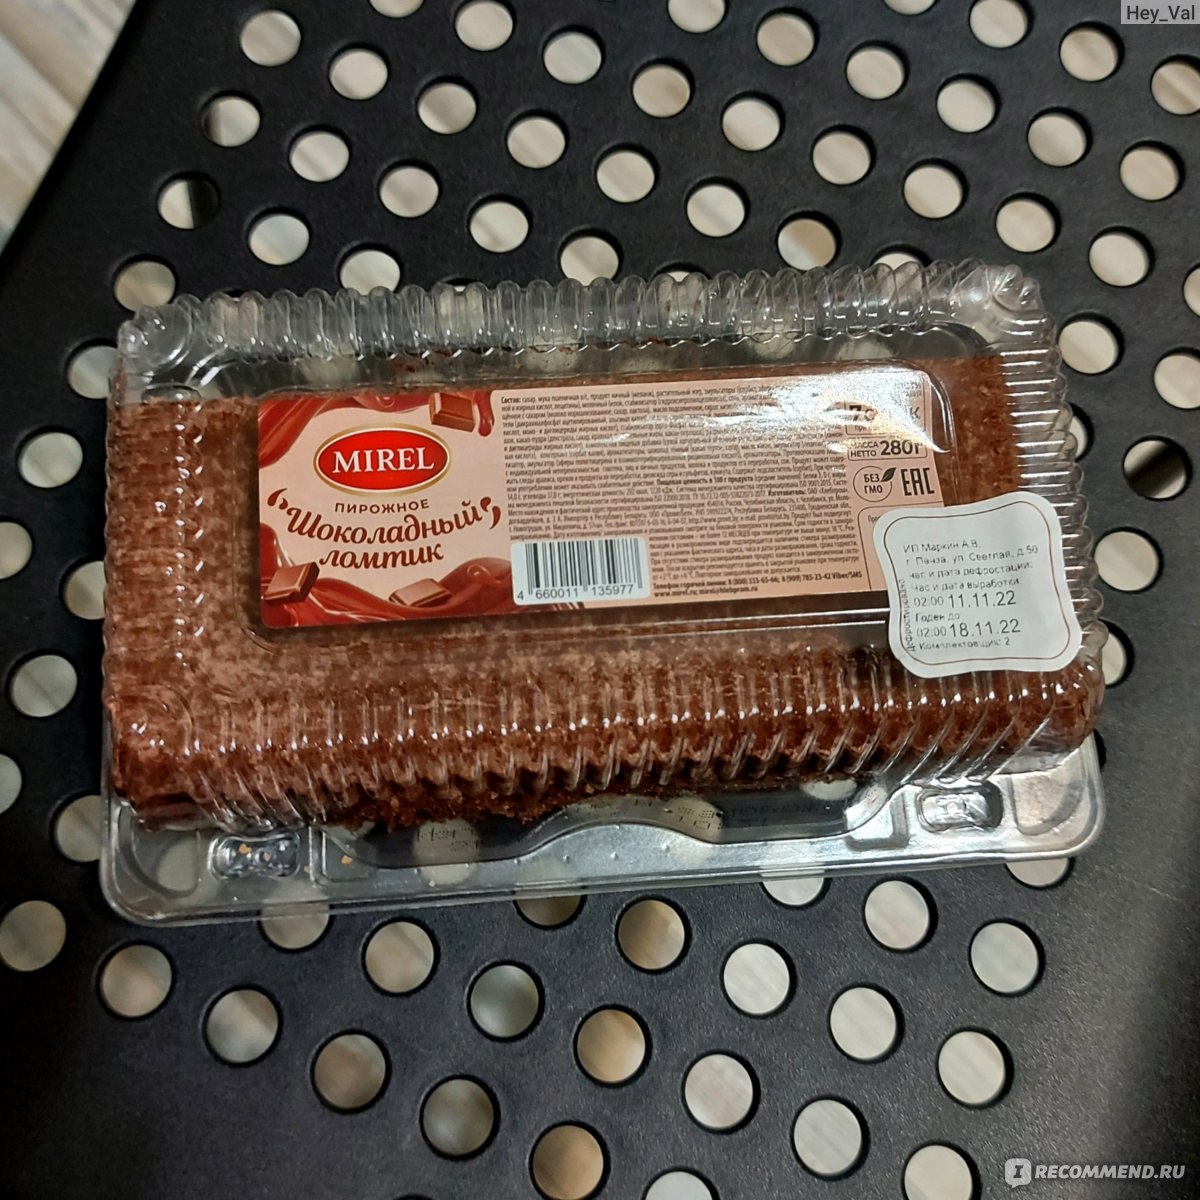 Пирожное шоколадный ломтик Мирель